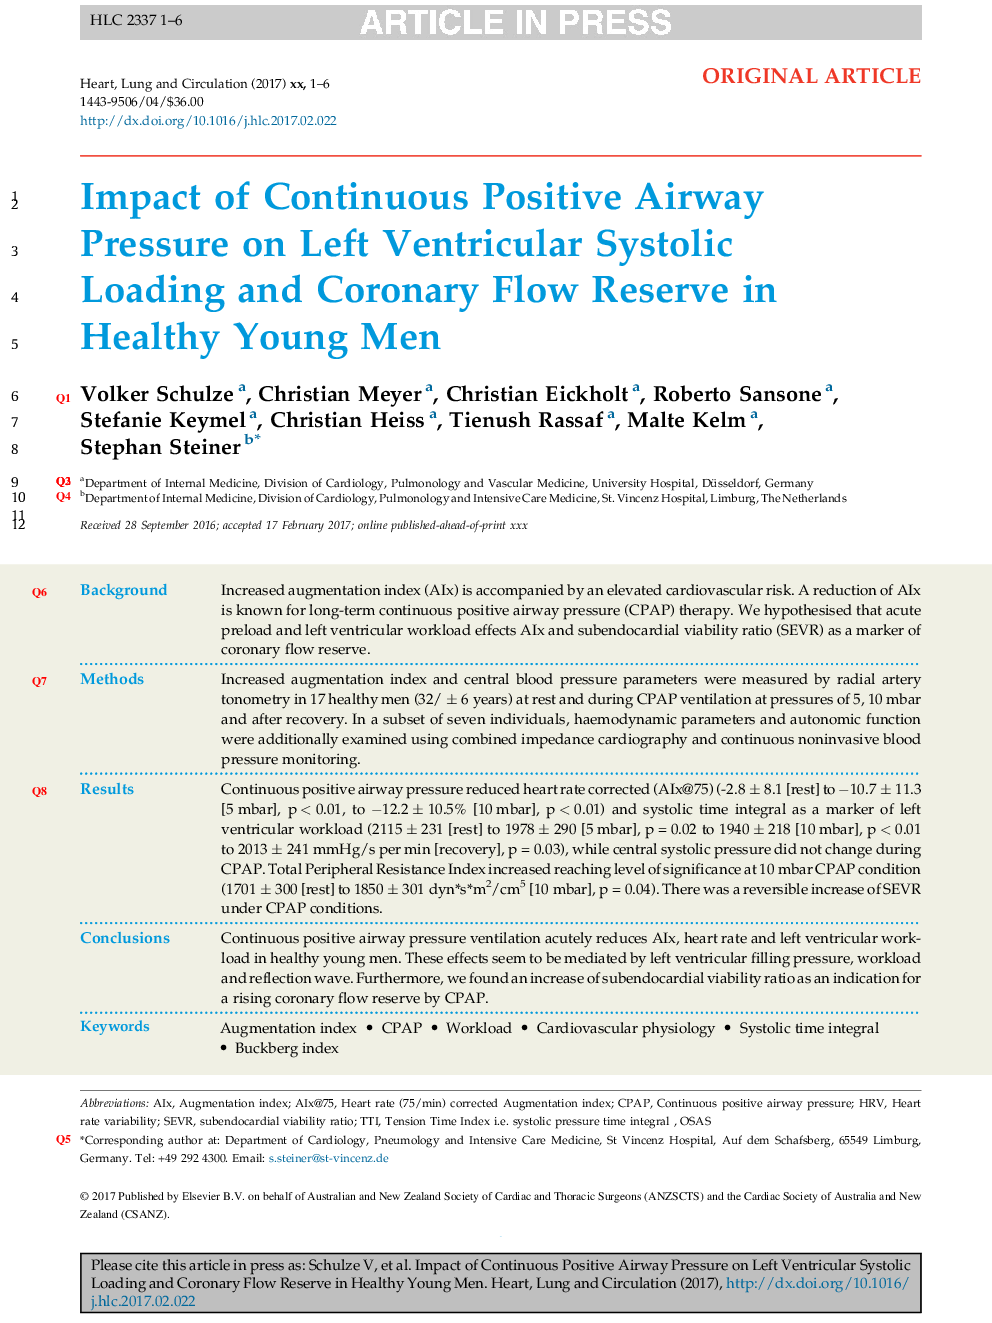 تأثیر فشار مثبت بطور مداوم در بارگذاری سیستولیک بطن چپ و رزرو جریان کرونری در مردان جوان سالم 